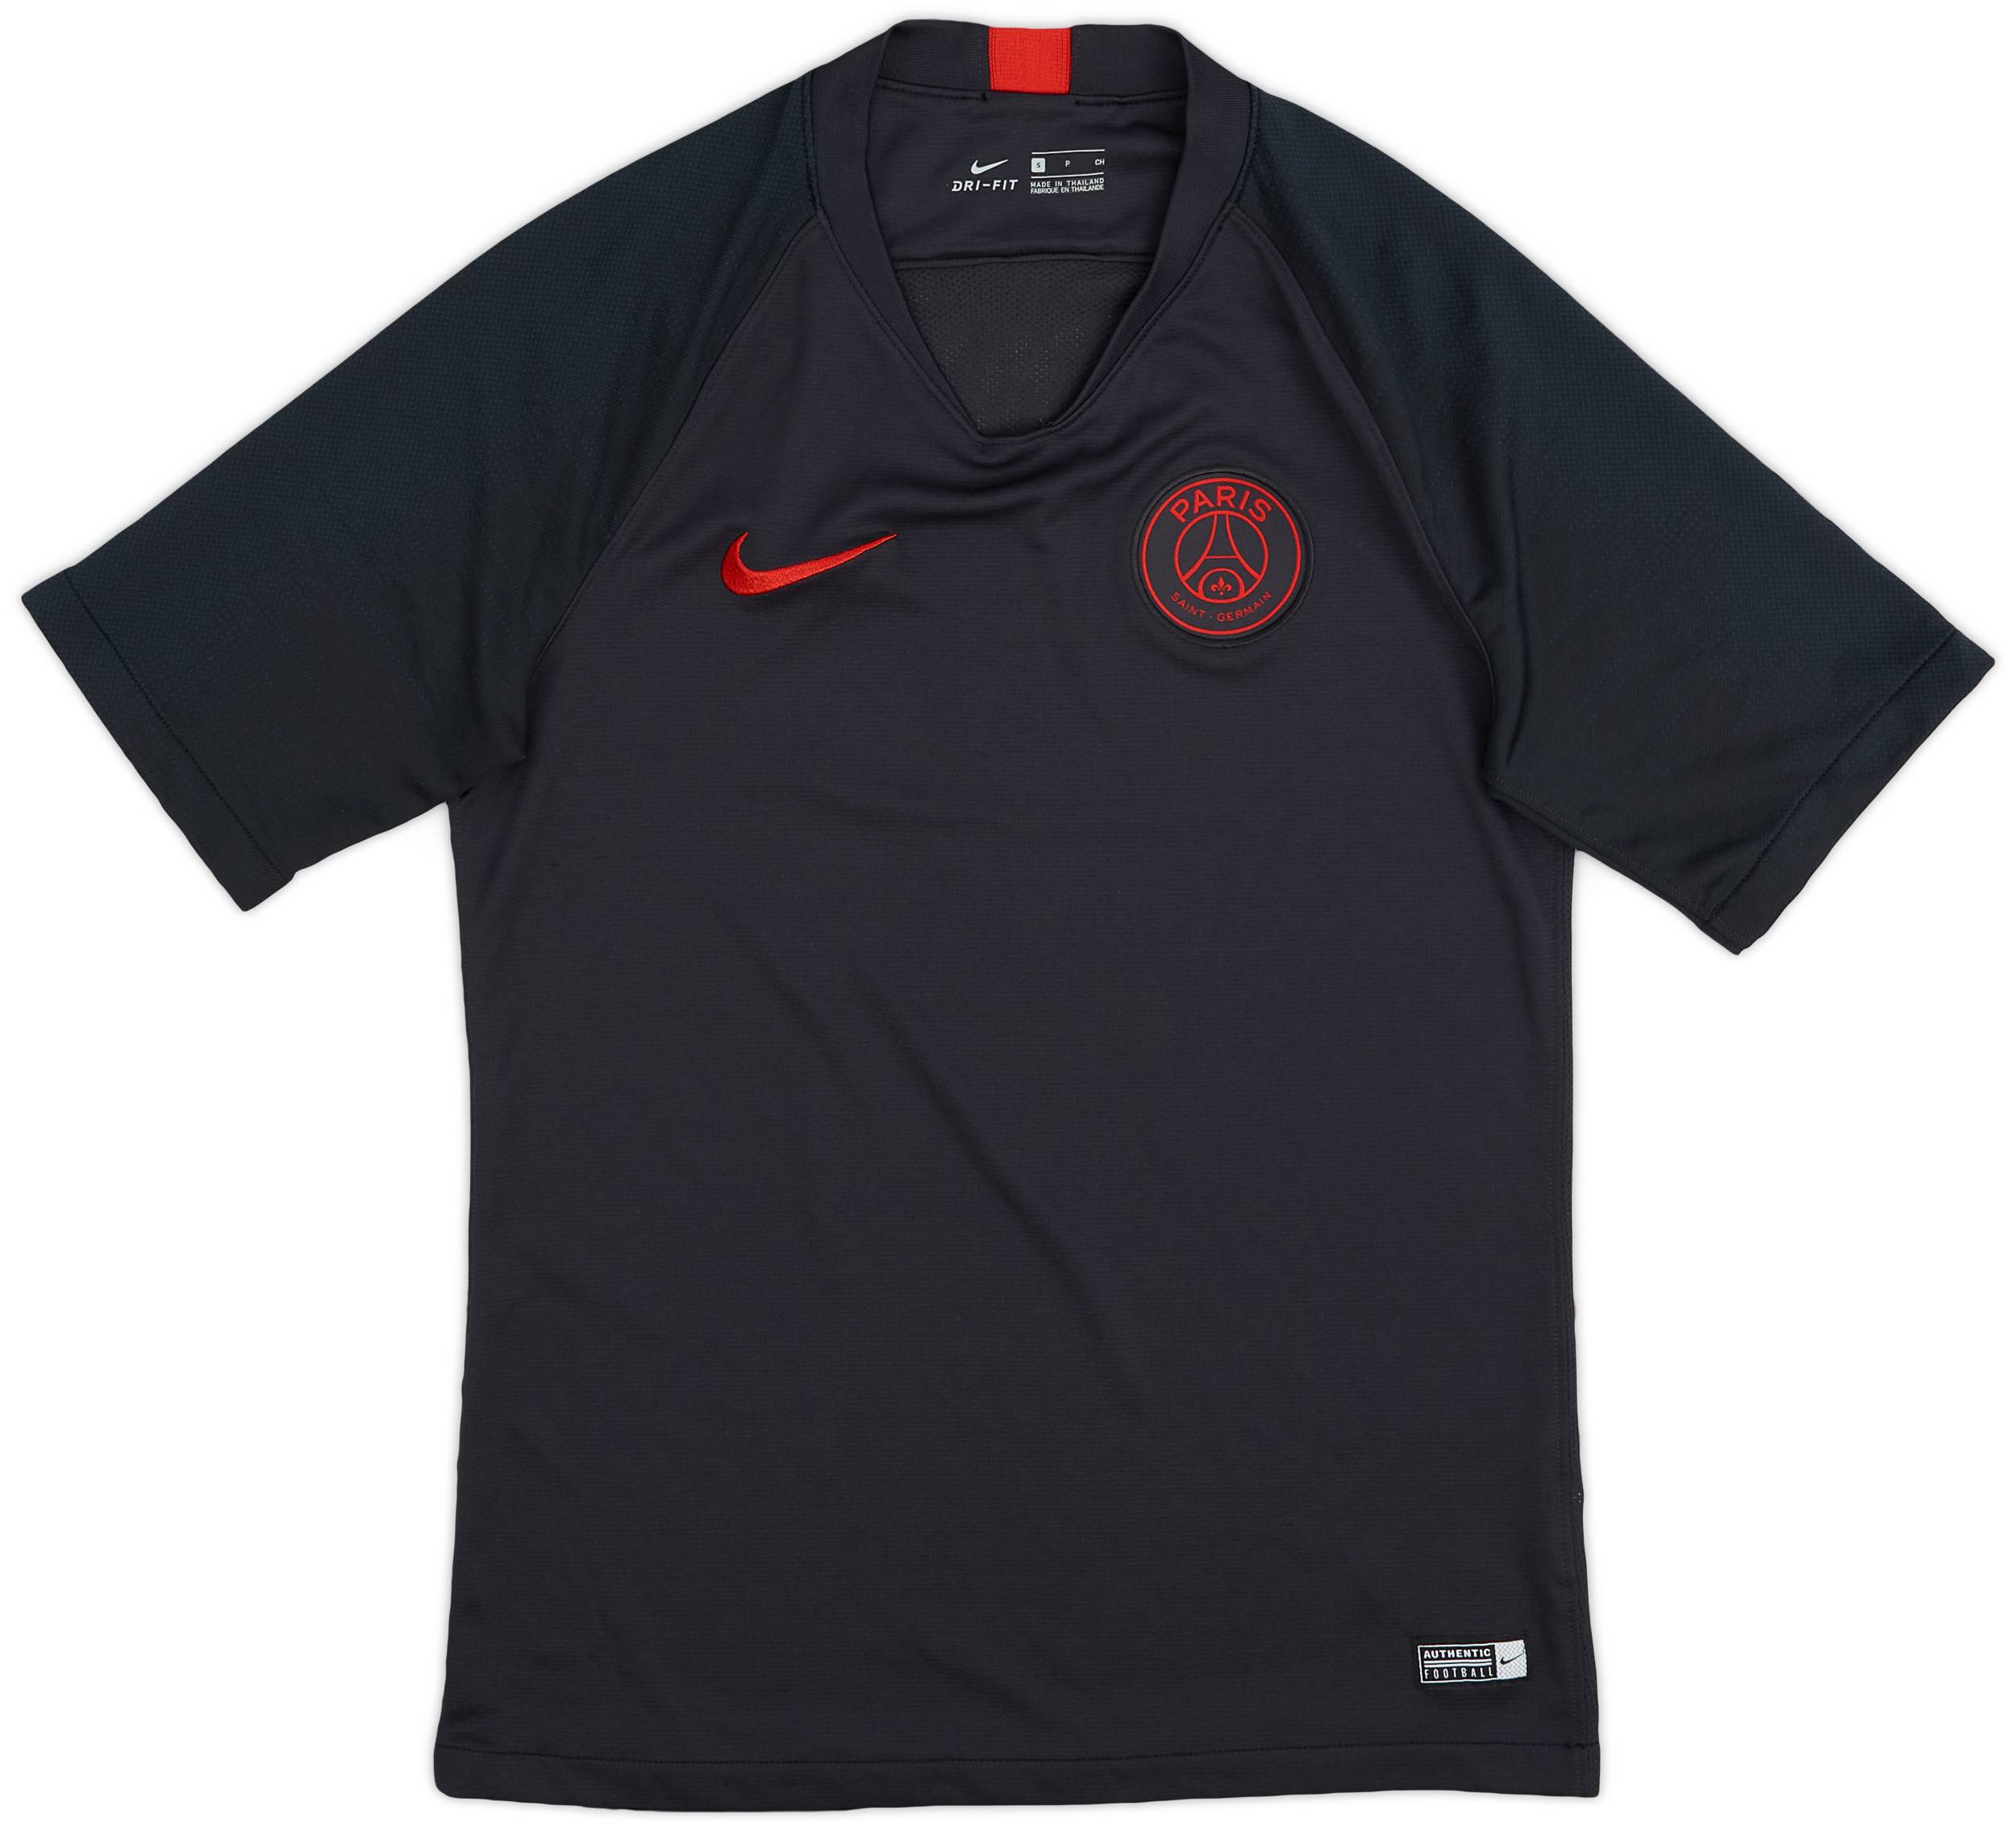 2019-20 Paris Saint-Germain Nike Training Shirt - 10/10 - (S)